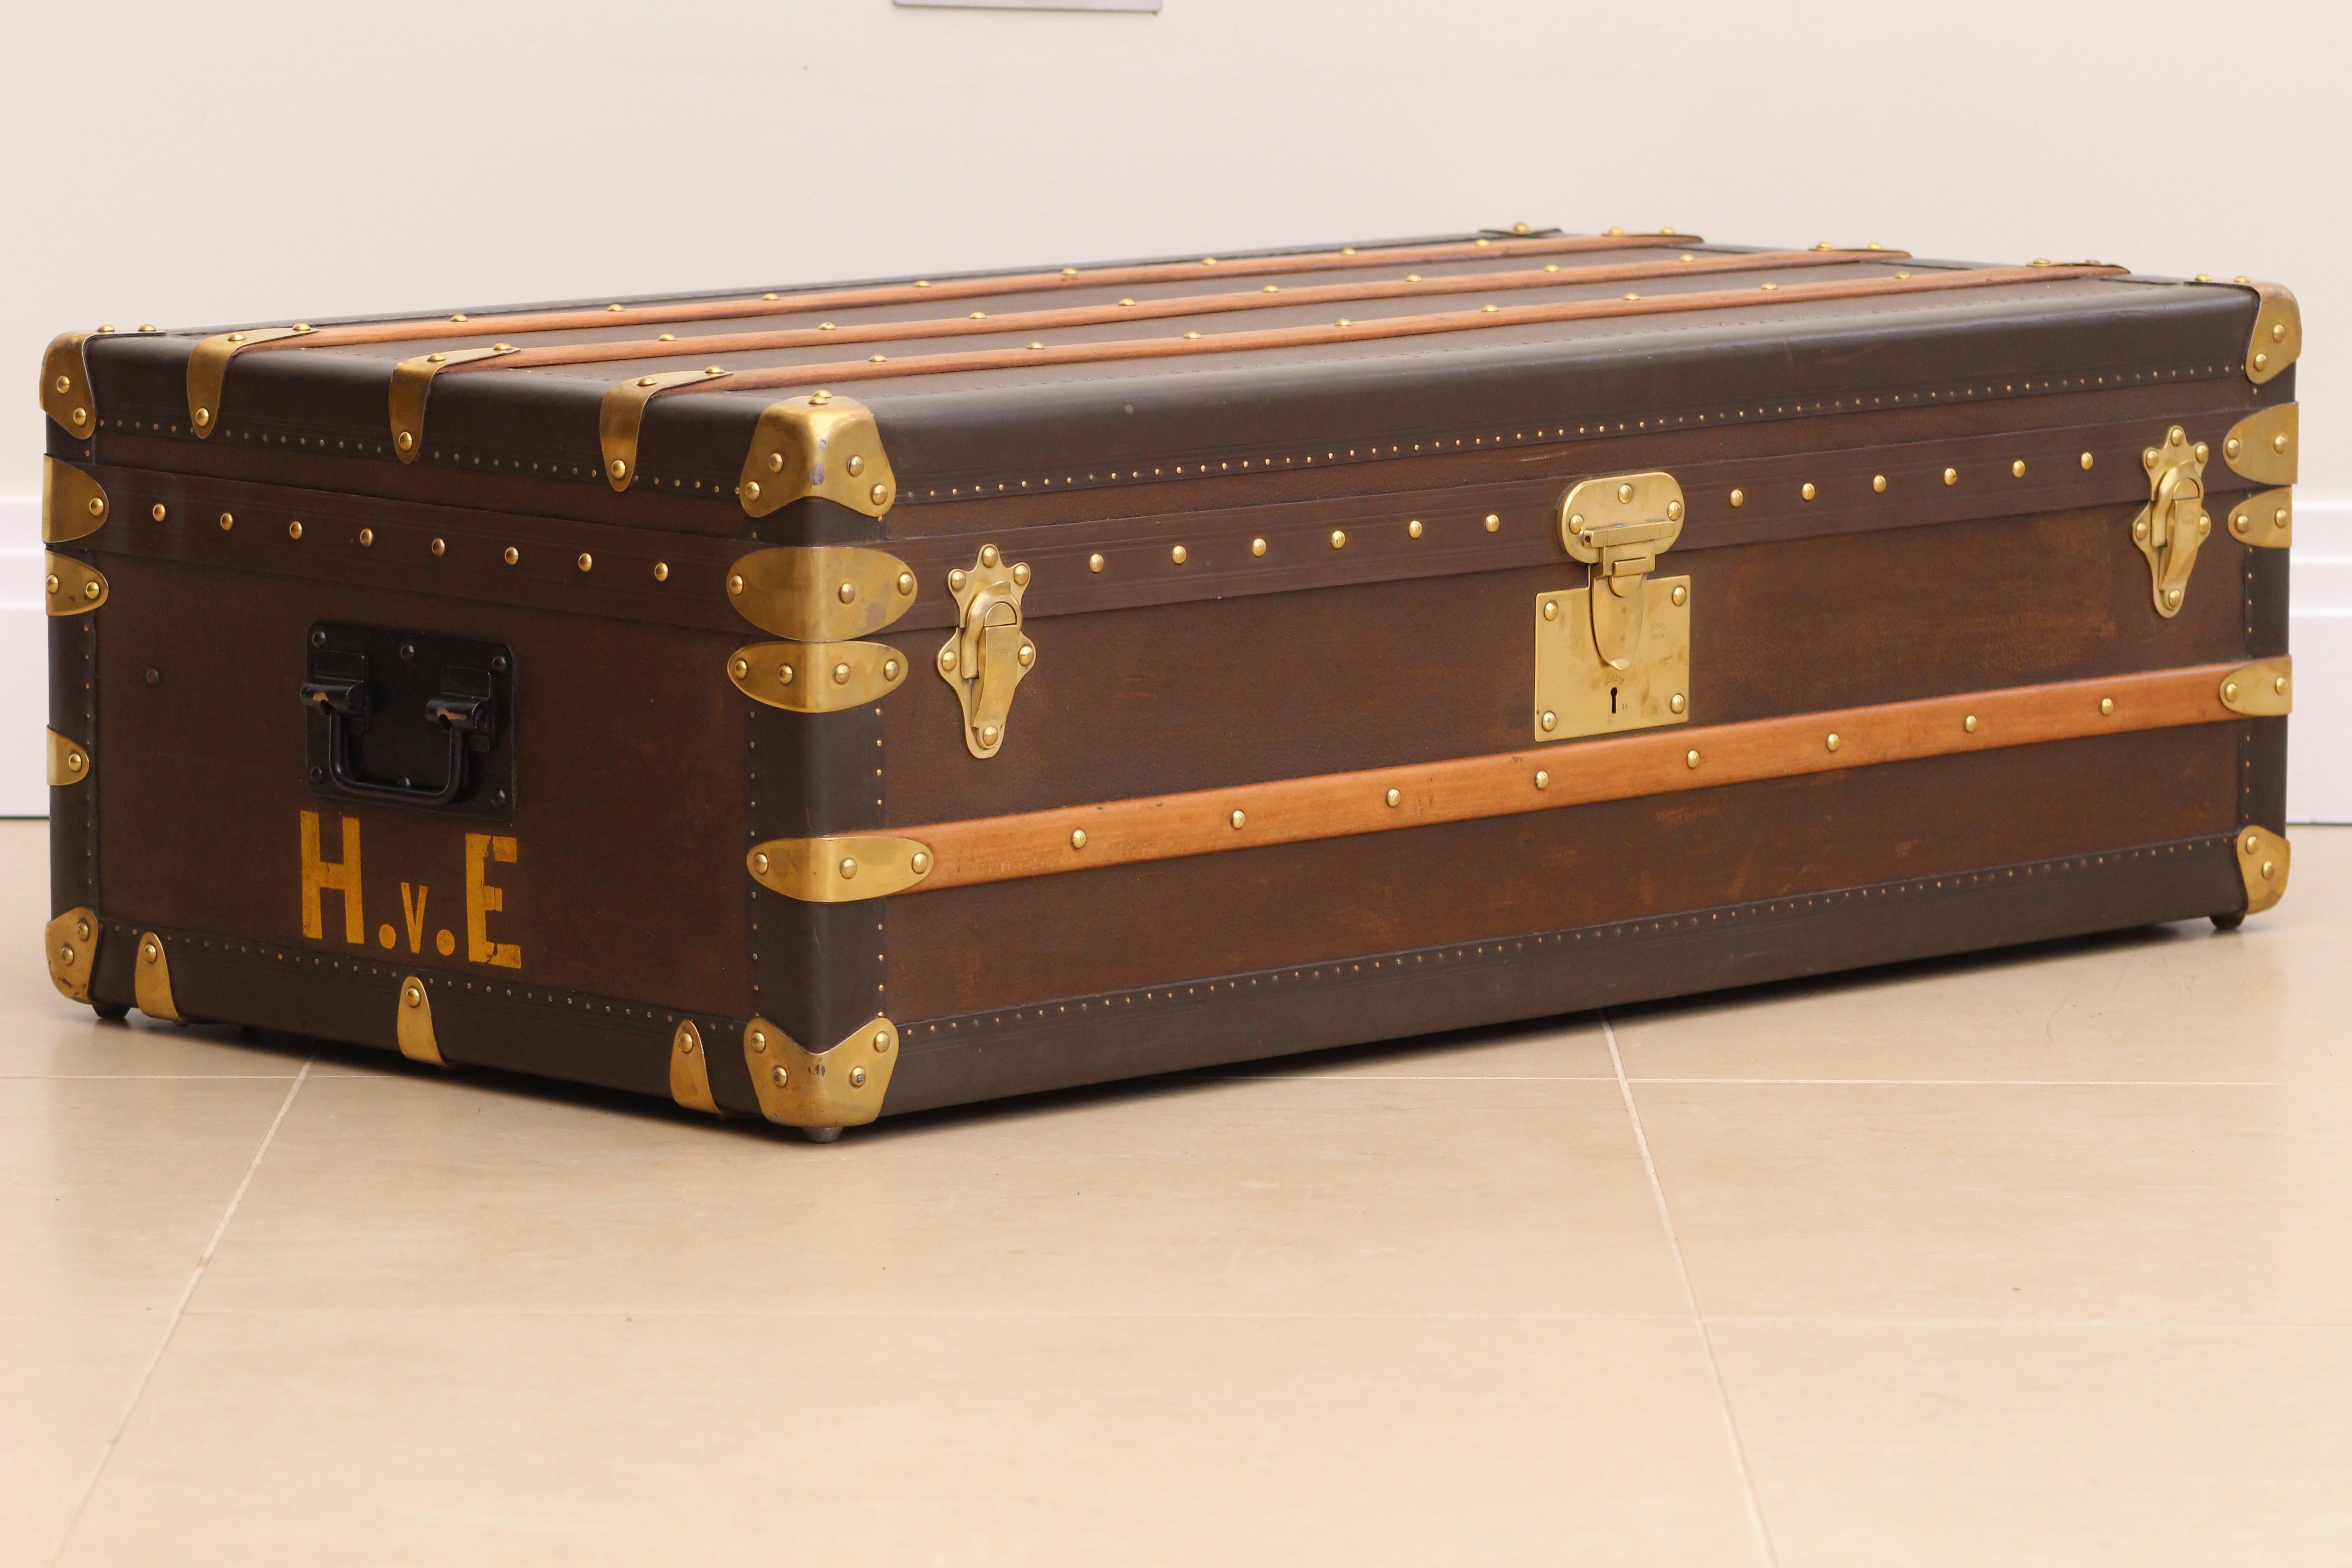 Die Goyard Cabin Trunk aus den 1920er Jahren ist ein bedeutendes Artefakt aus einer goldenen Ära, das zeitlose Eleganz und tadellose Handwerkskunst ausstrahlt. Dieser Koffer repräsentiert das Erbe von Goyard an Luxus und Innovation und verkörpert